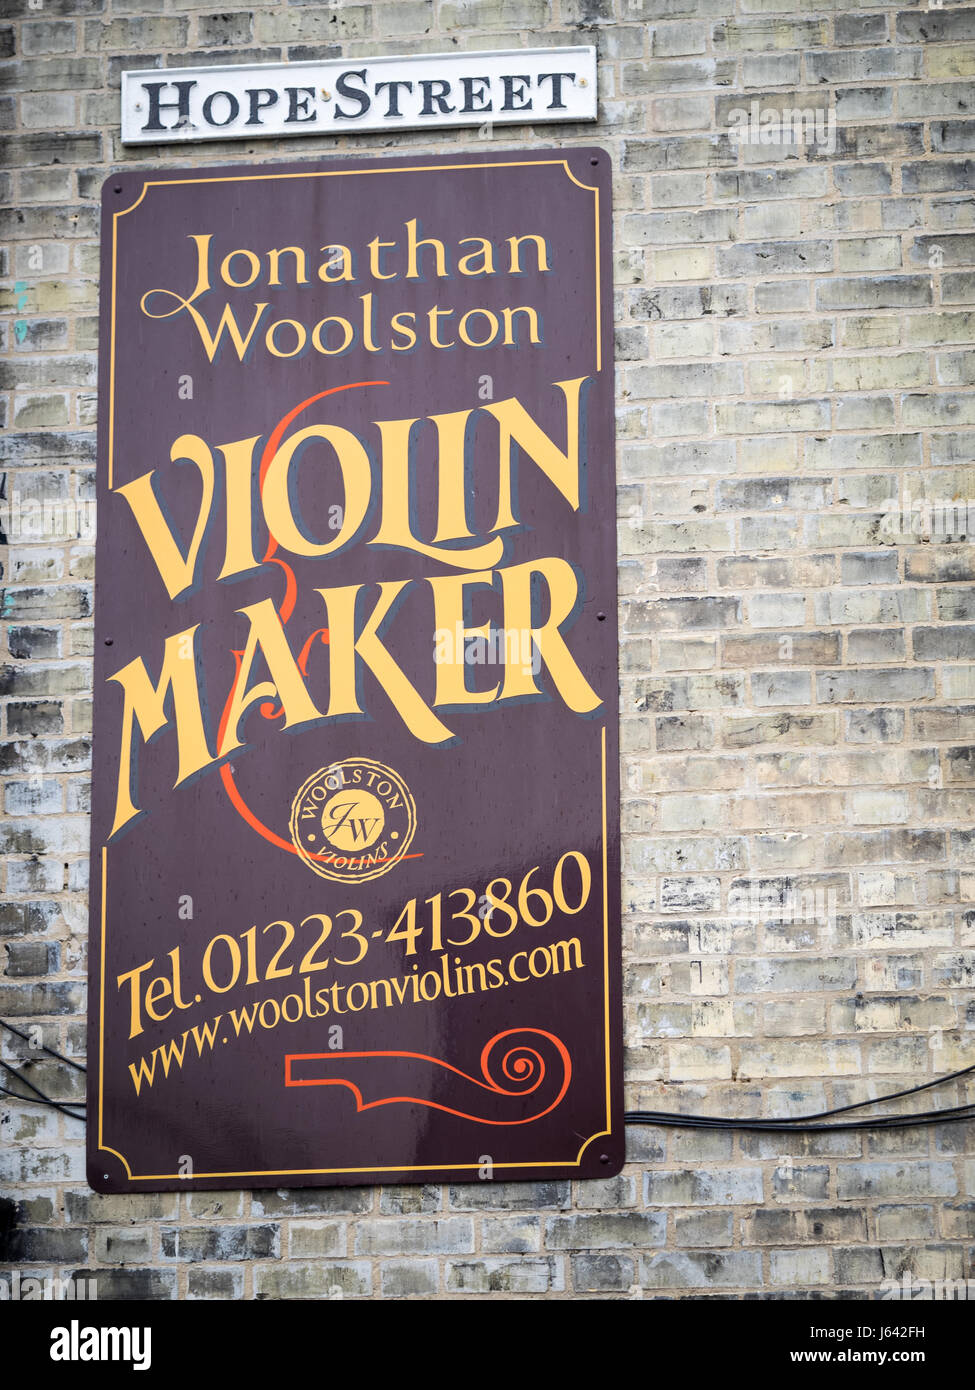 Señales fuera del taller de Jonathan Woolston, violín Maker, en Mill Road, Cambridge, Reino Unido. Foto de stock